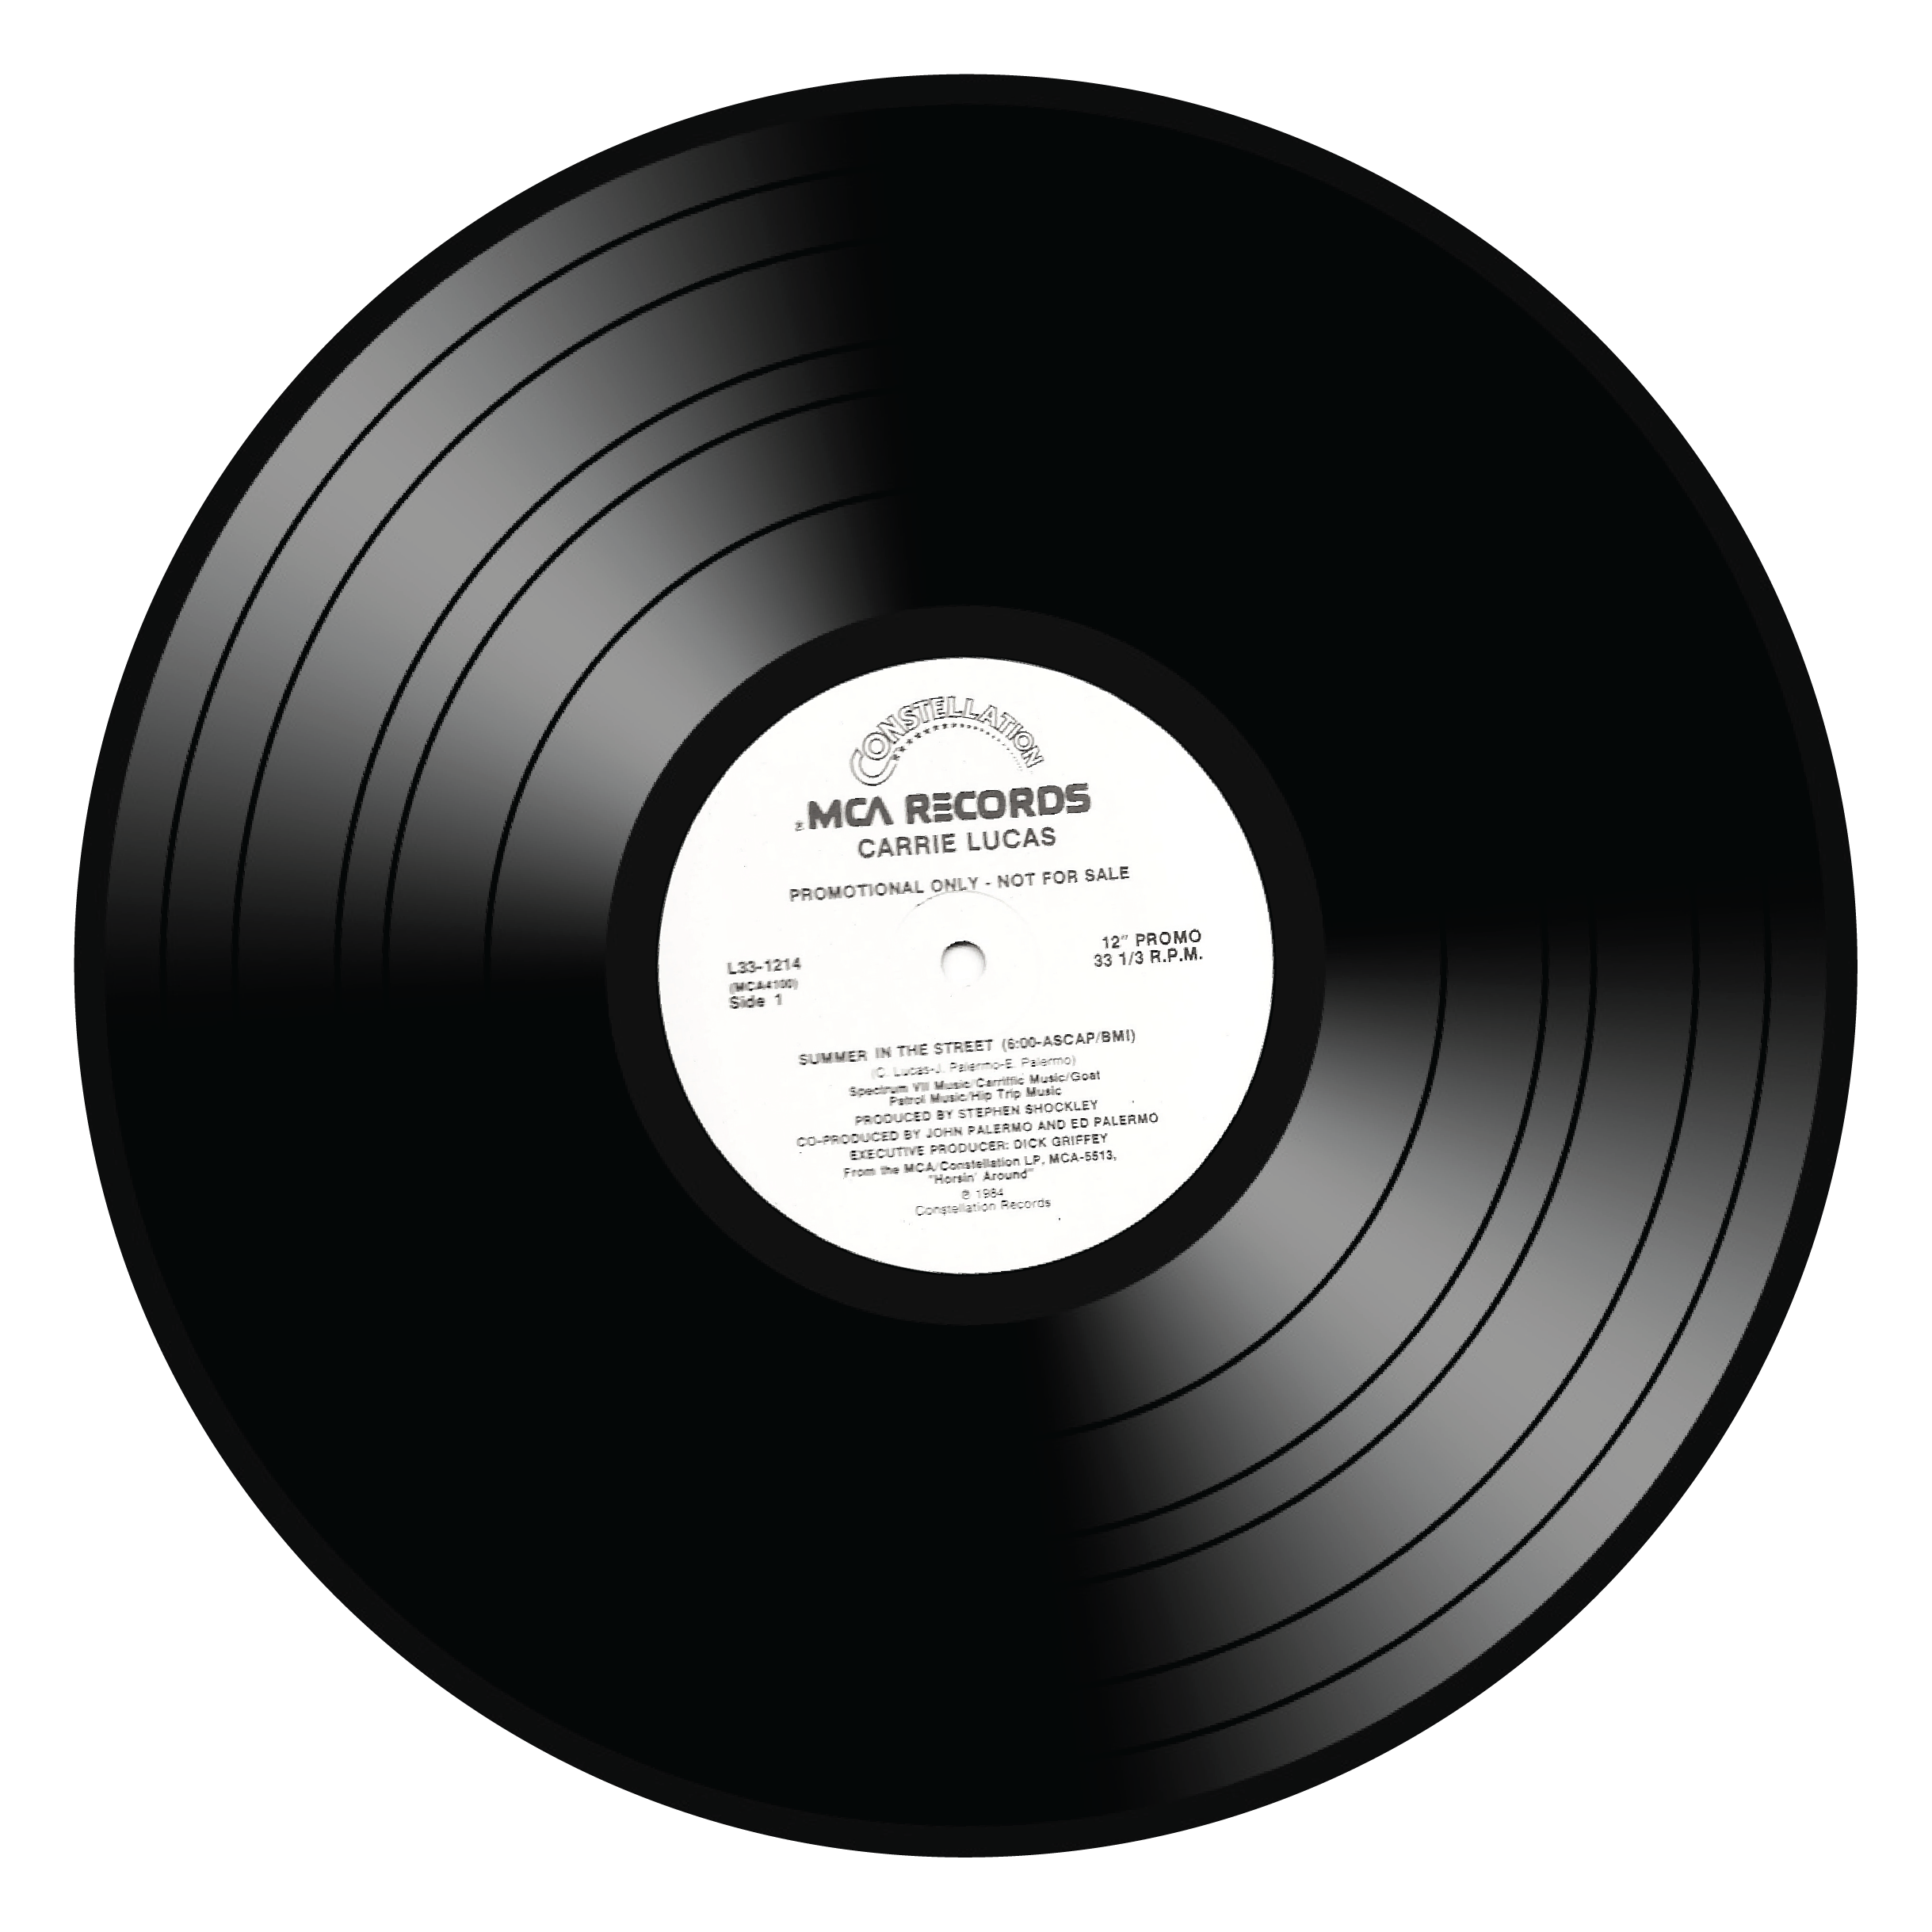 Vinyl Lp Record Album Clip Ar